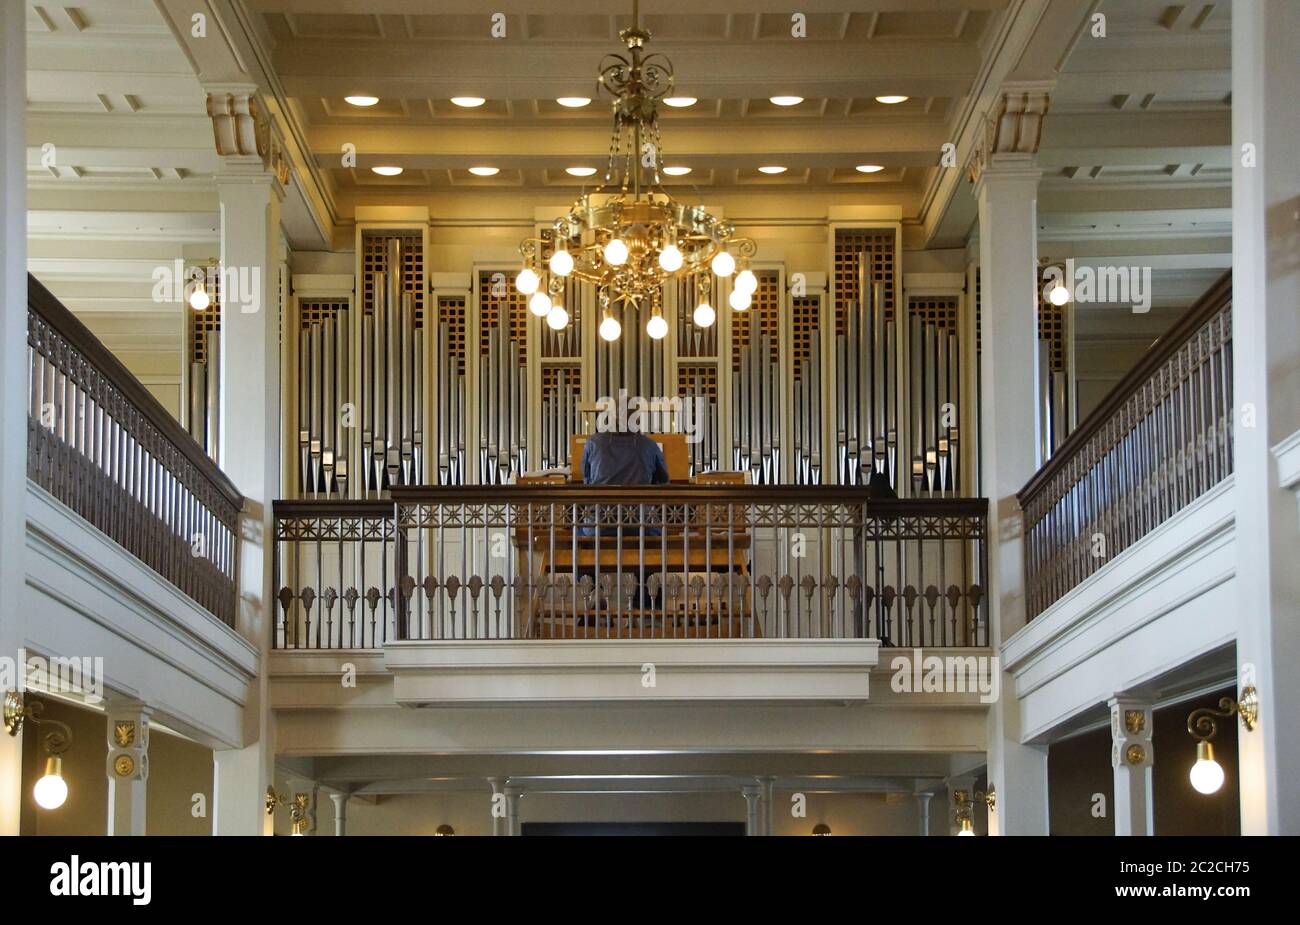 Orgel und Interieur in hellen Farben Stockfoto